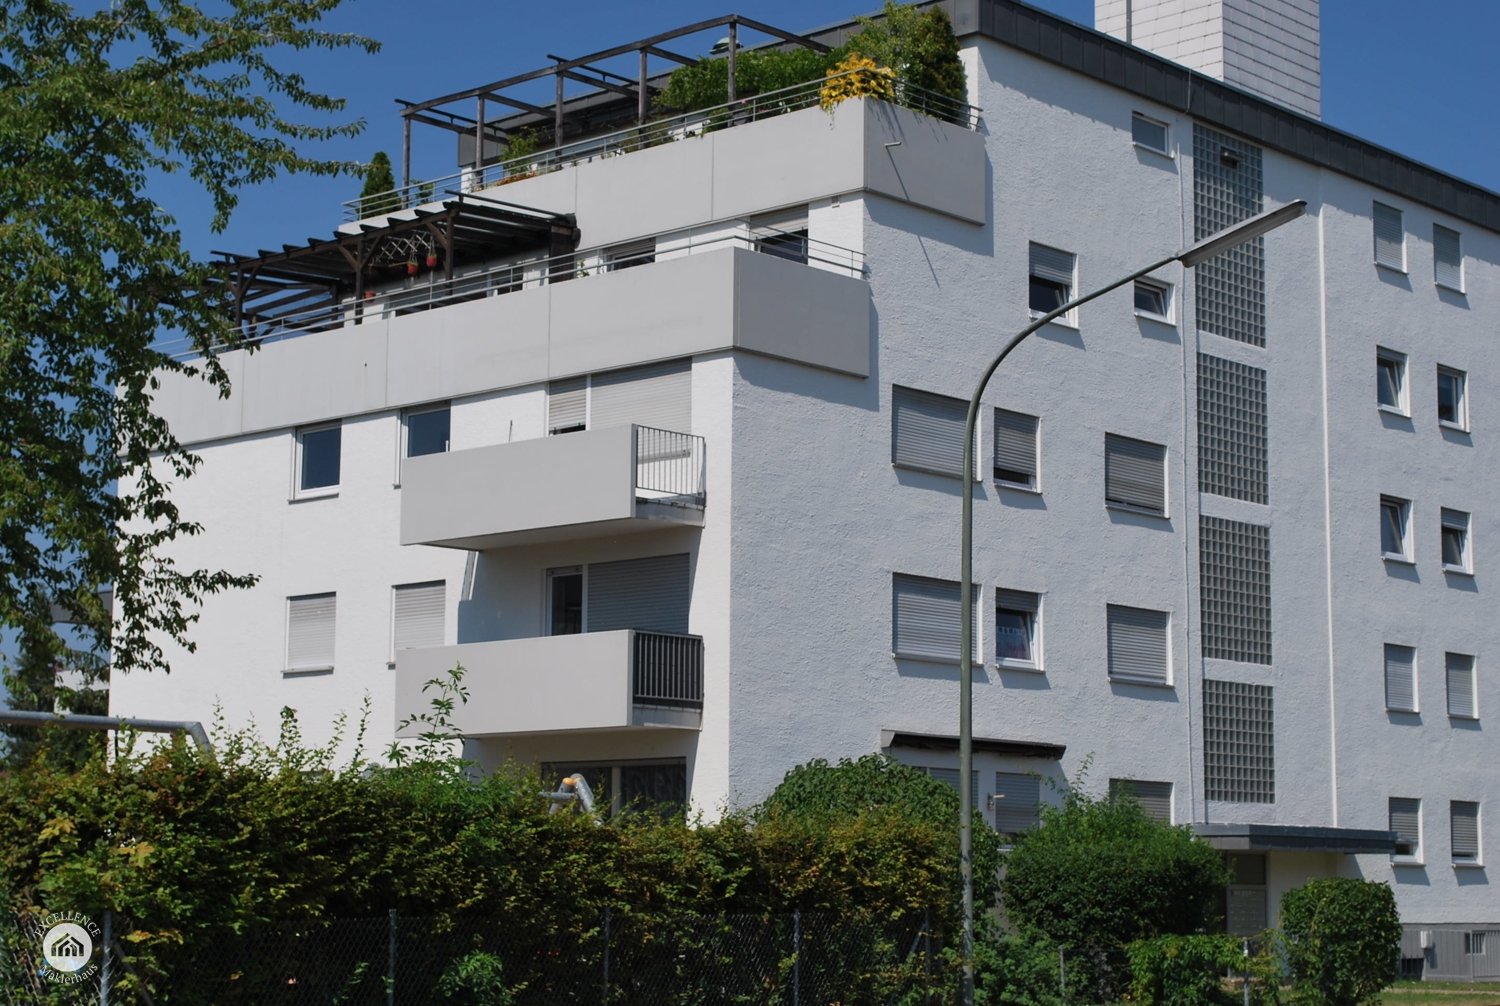 Immobilienangebot - Neu-Ulm / Pfuhl - Alle - 1-Zimmer-Wohnung in Pfuhl - ideal für Singles, Studenten oder als Kapitalanlage